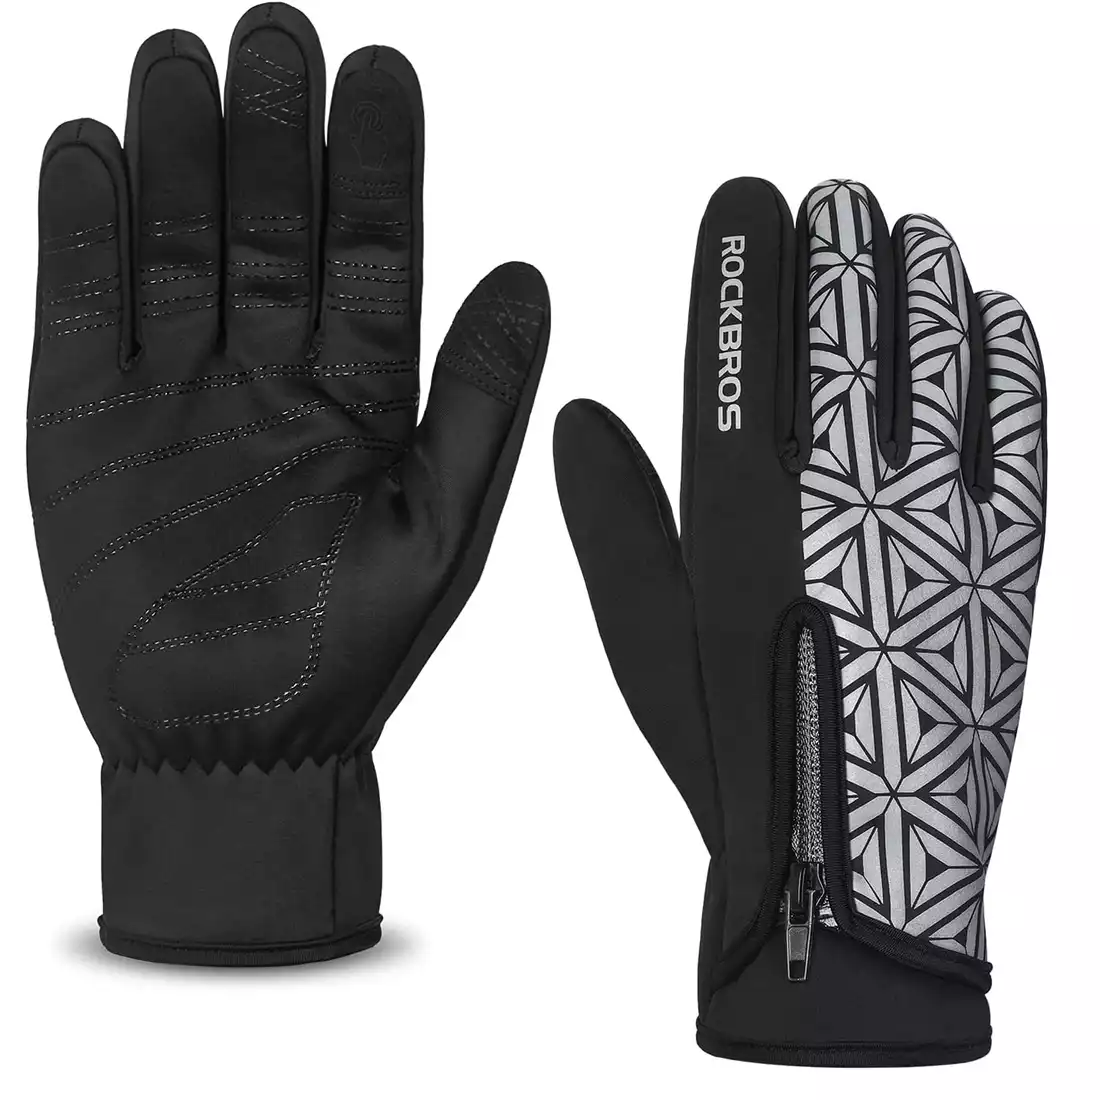 Rockbros zimowe rękawiczki rowerowe softshell black 16140778002